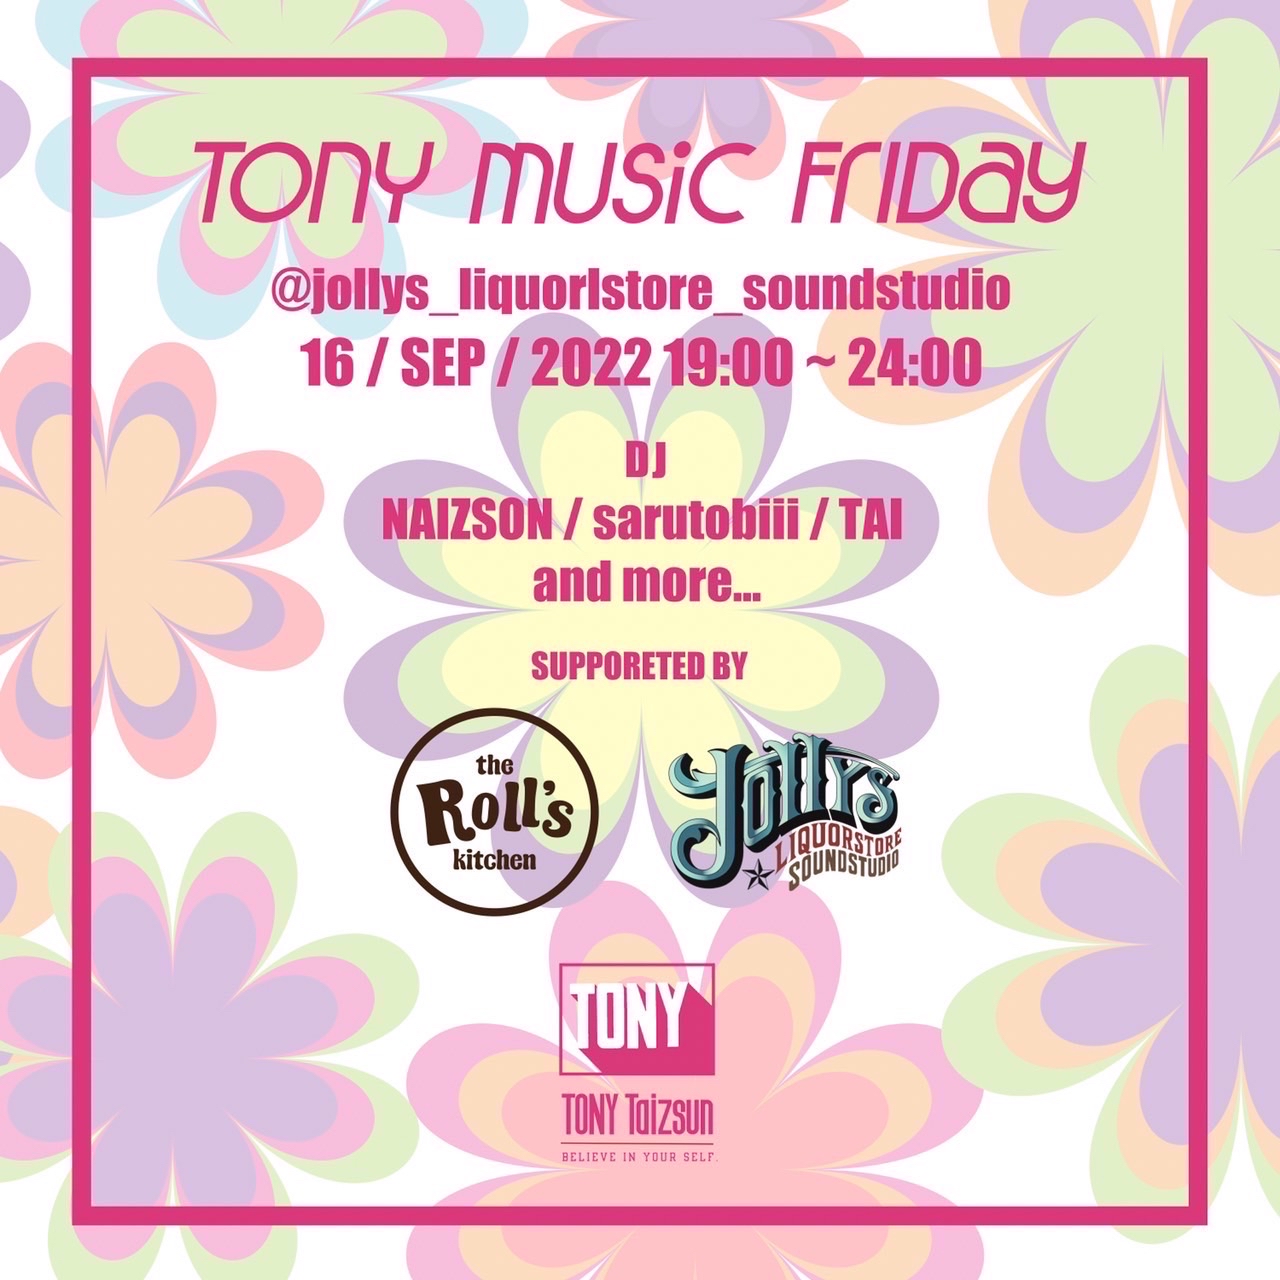 9月16日、TonyTaizsun® が『TONY MUSIC FRIDAY』を開催